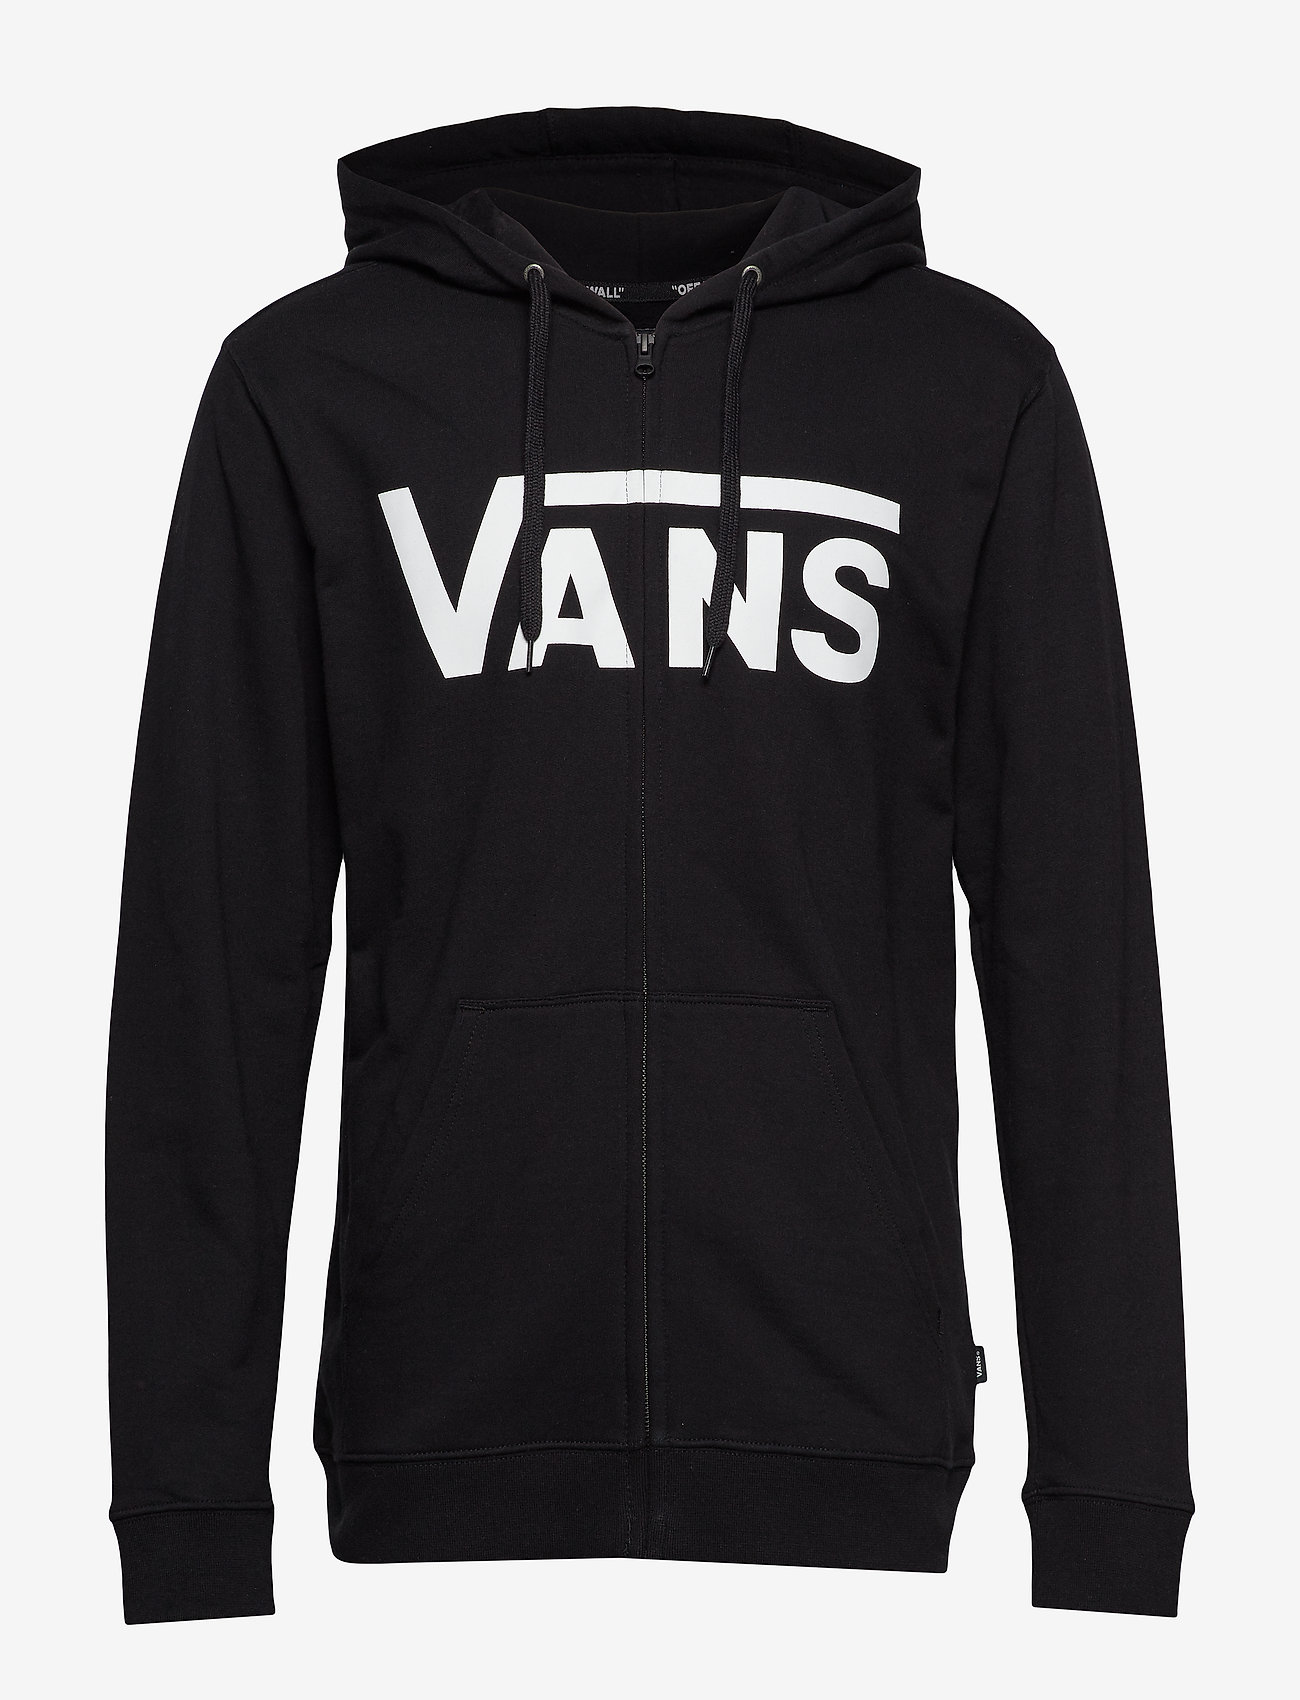 VANS - MN VANS CLASSIC ZIP HOODIE II - hoodies - black/white - 0